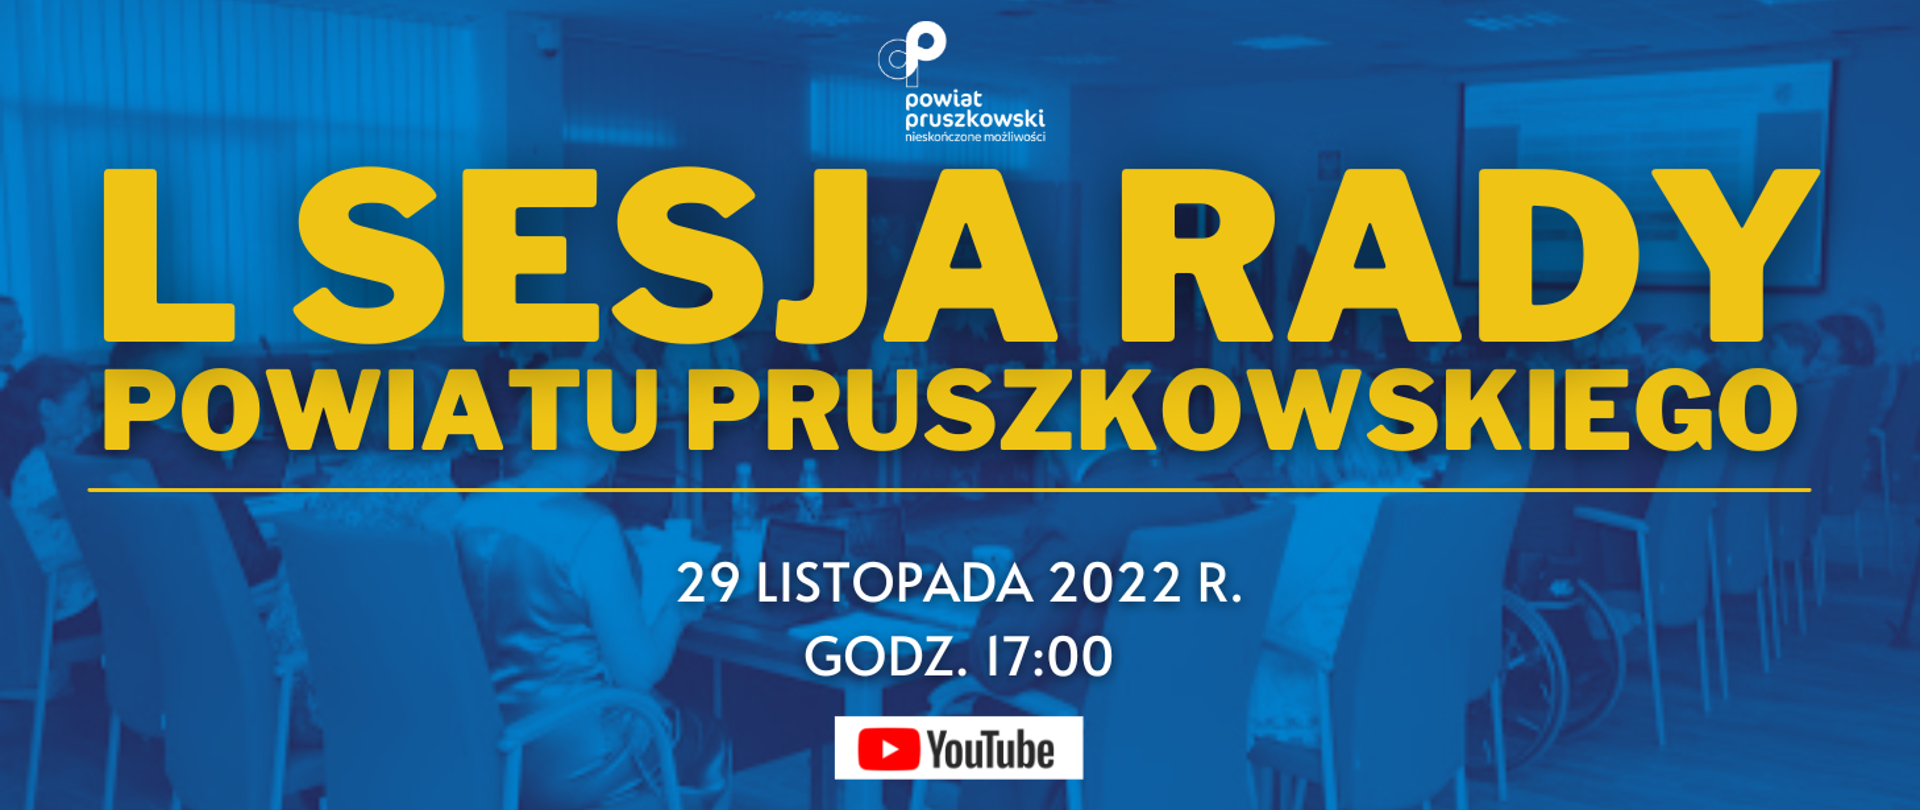 L Sesja Rady Powiatu Pruszkowskiego, która odbędzie się
29 listopada 2022 r. o godz. 17:00 w Starostwie Powiatowym w Pruszkowie,
przy ul. Drzymały 30 (sala konferencyjna IV piętro).
